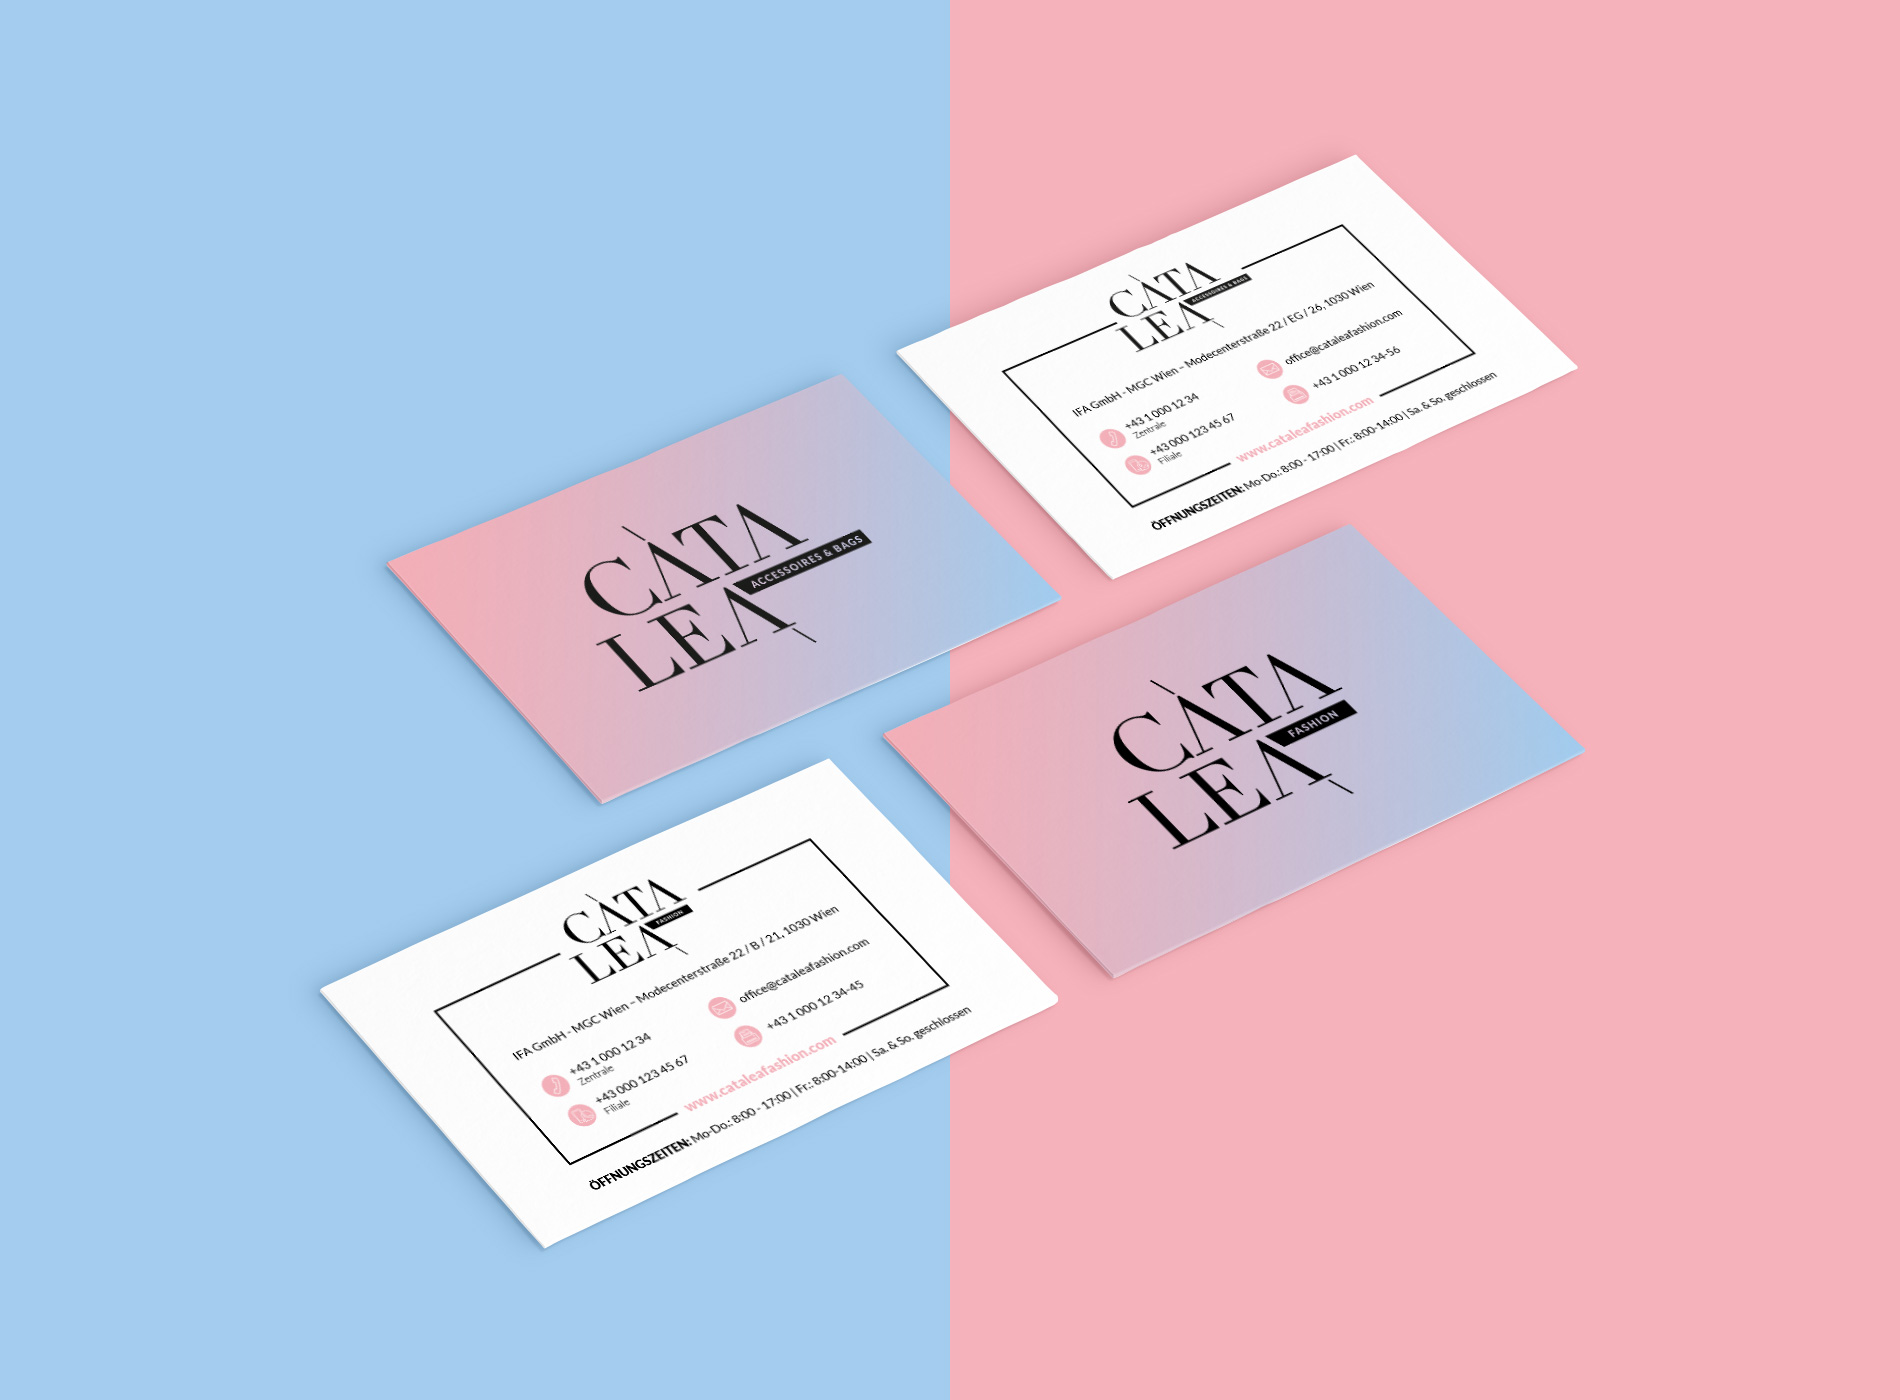 Catalea Visitenkarte Grafikdesign